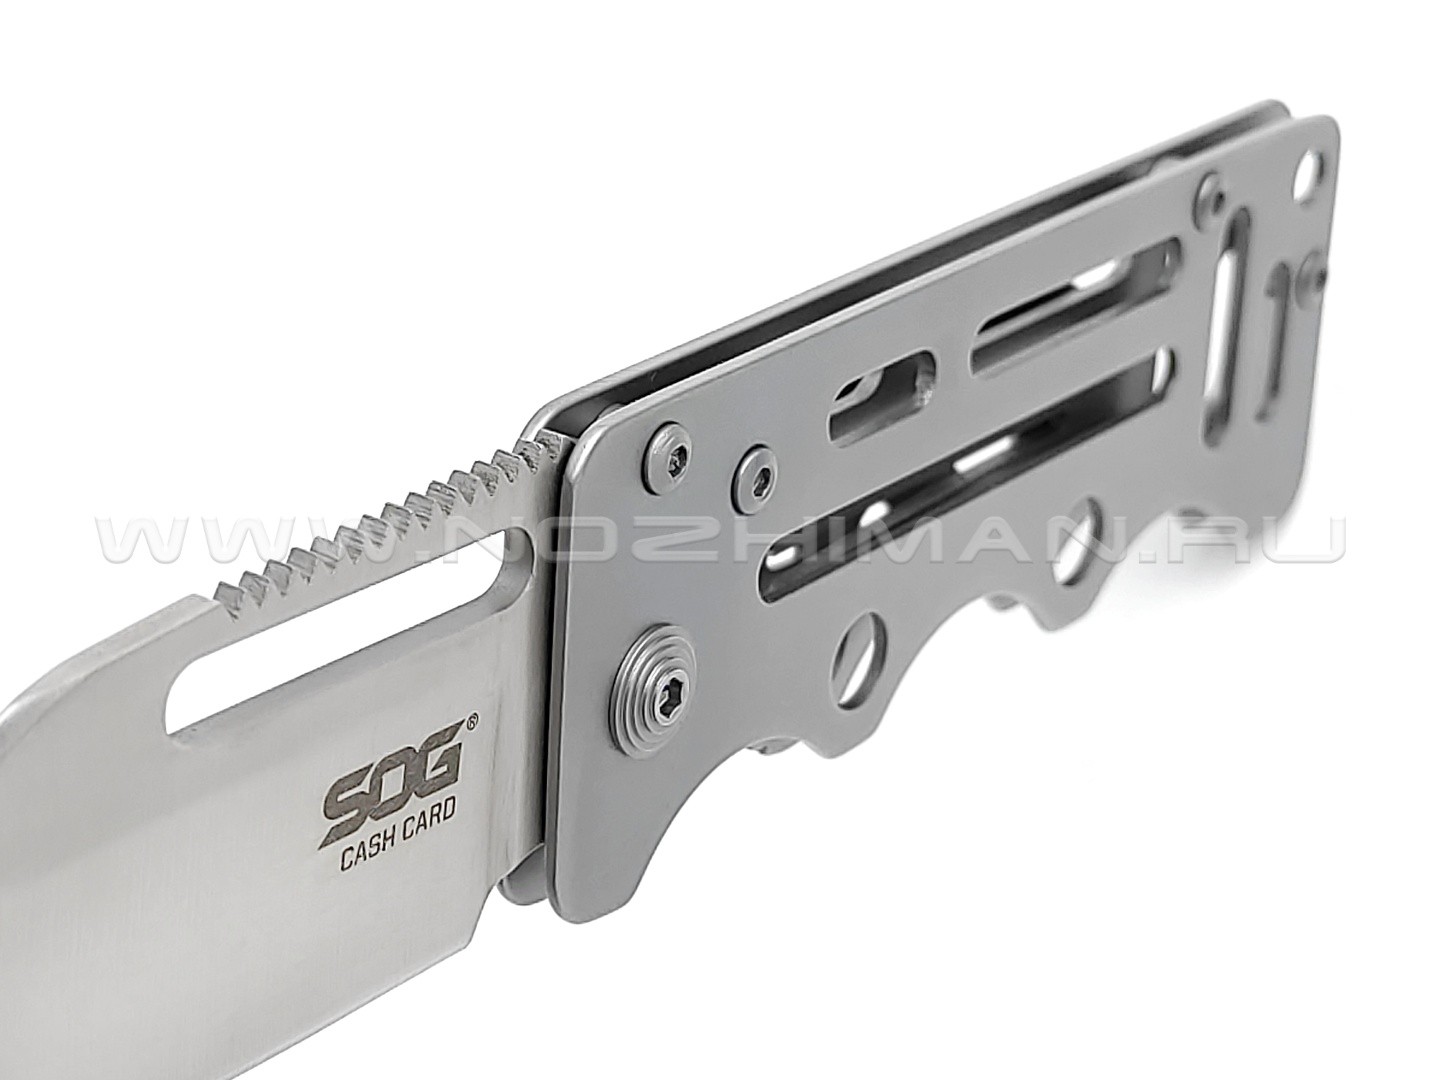 Нож SOG Cash Card EZ1 сталь 8Cr13MoV рукоять Stainless steel